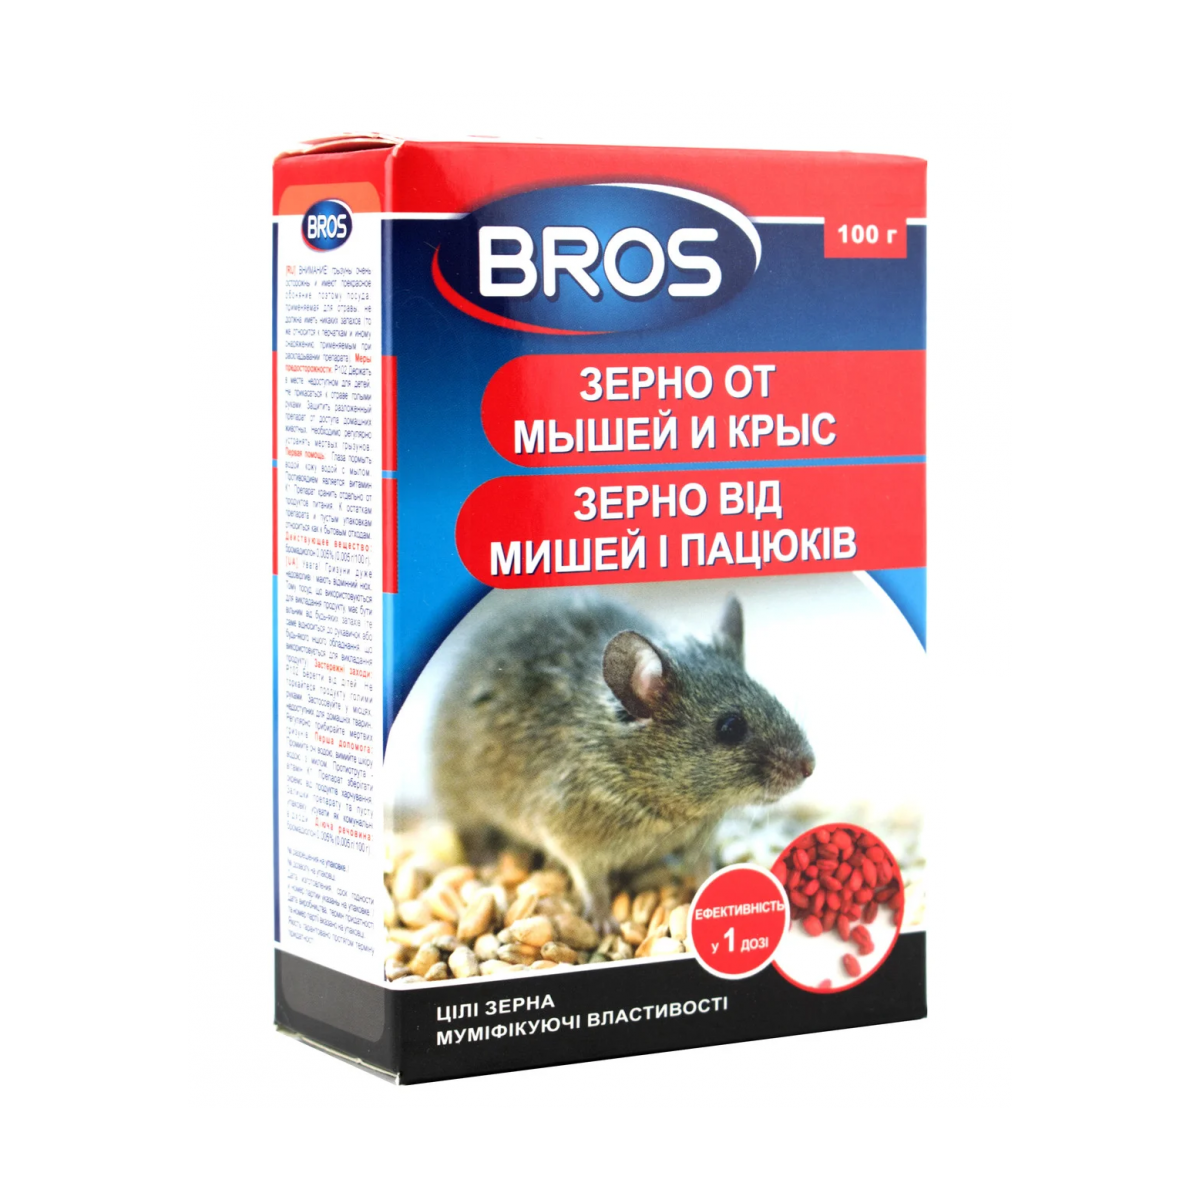 Зерно від мишей і пацюків Bros 100 г / Брос